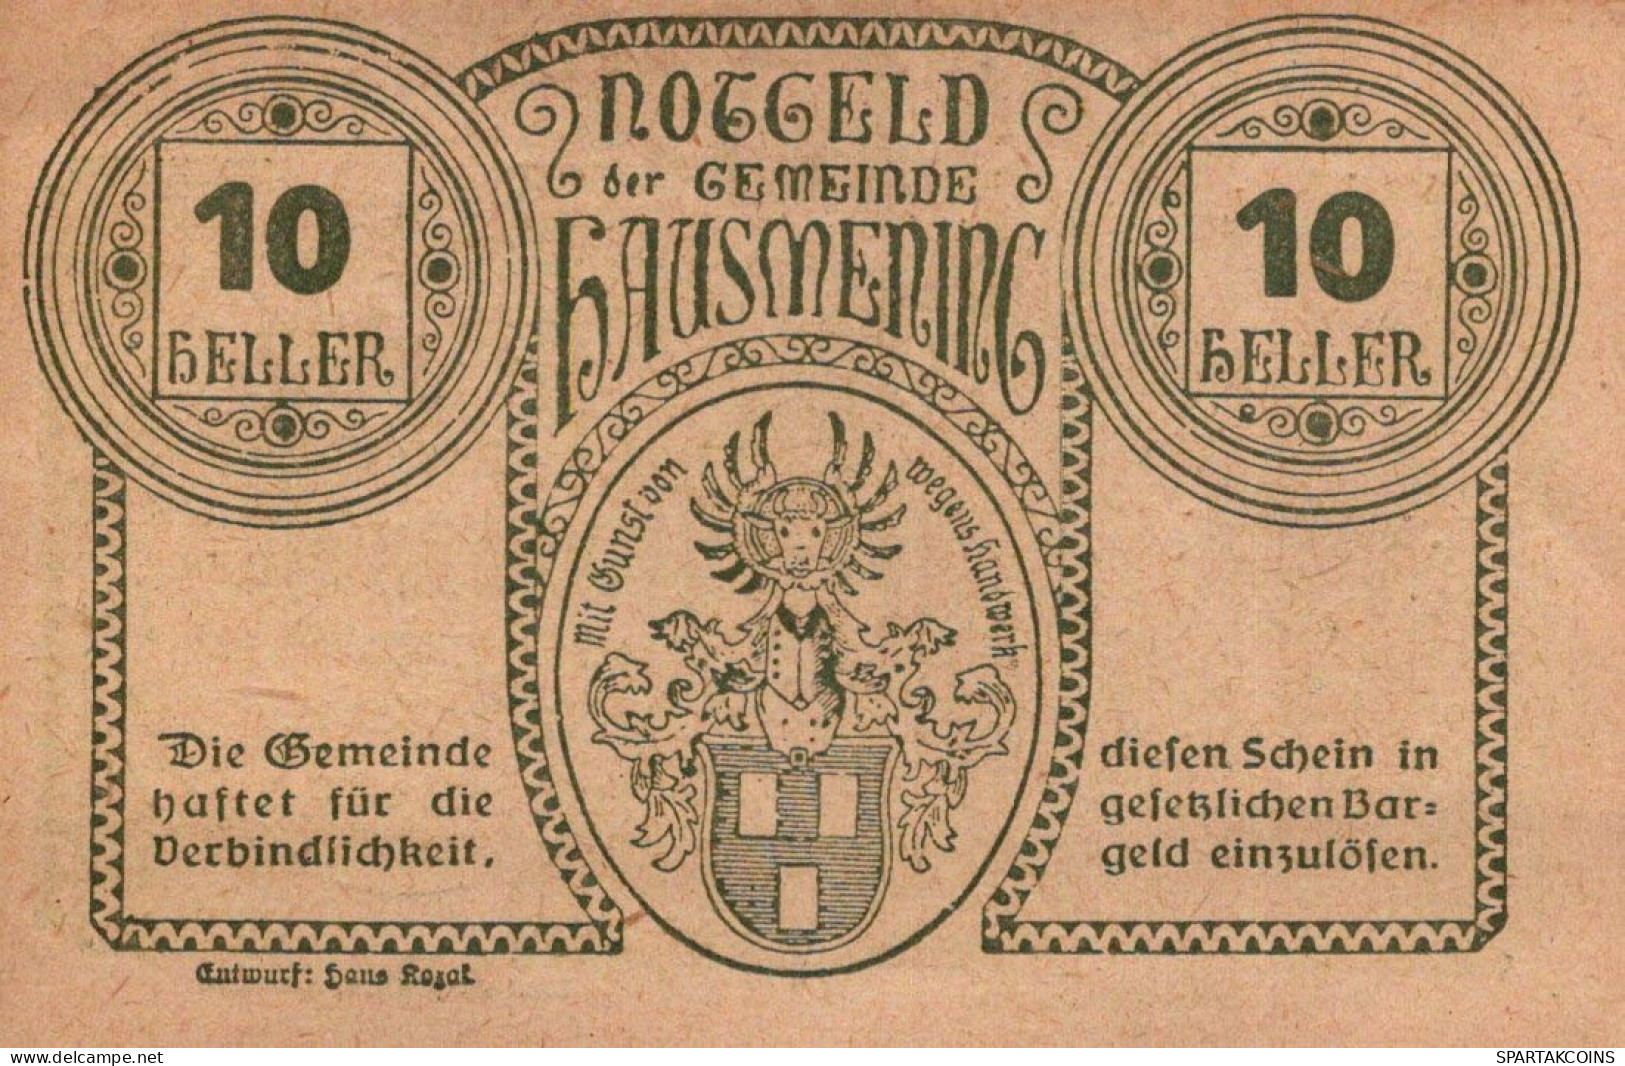 10 HELLER 1920 Stadt HAUSMENING Niedrigeren Österreich Notgeld Papiergeld Banknote #PG860 - [11] Emissioni Locali